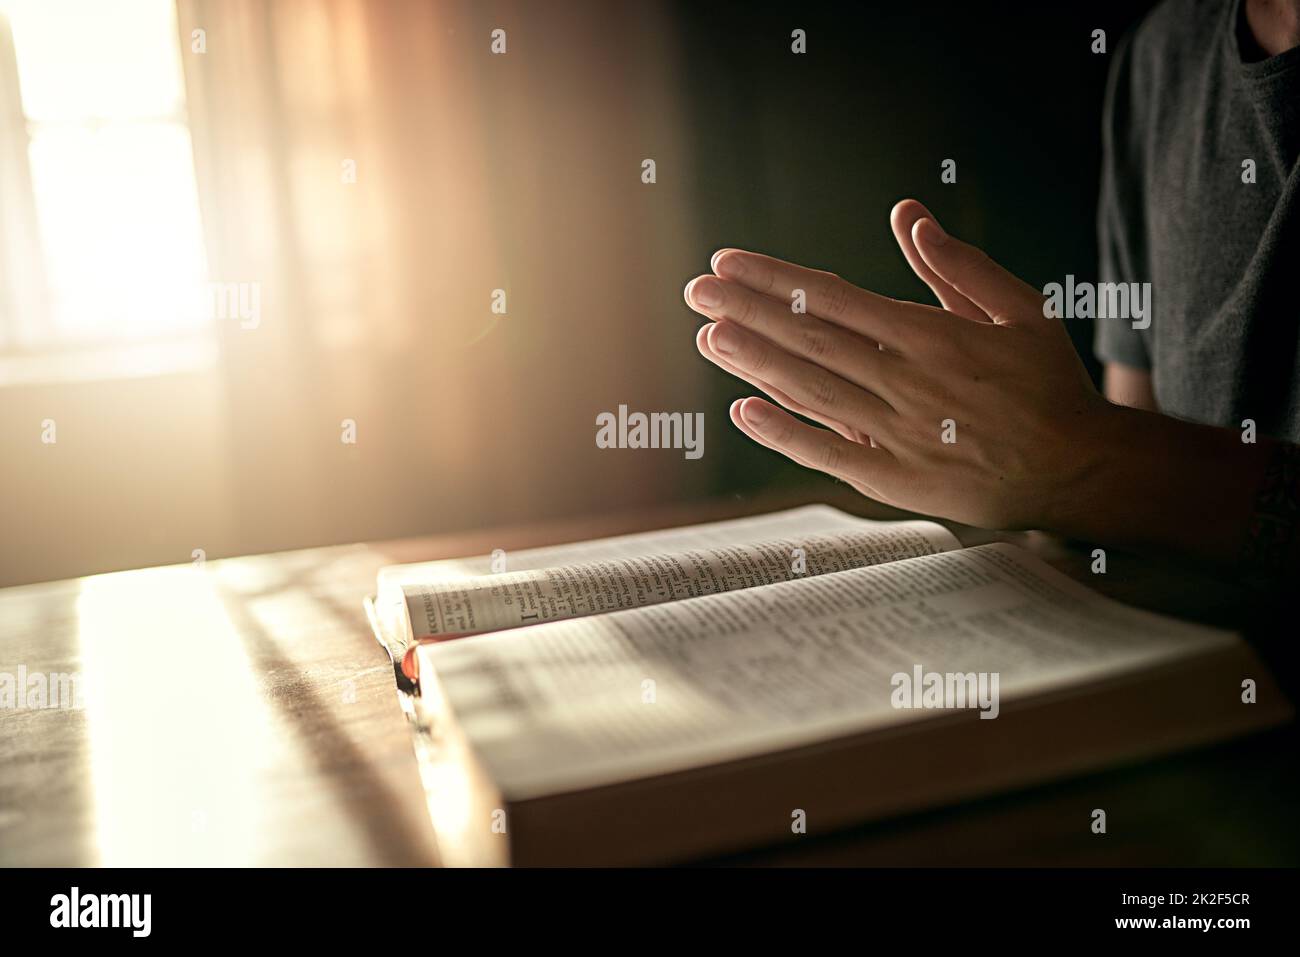 Seinen Tag richtig beginnen. Ausgeschnittene Aufnahme eines nicht identifizierbaren Mannes, der seine Hände im Gebet über eine offene Bibel klammert. Stockfoto